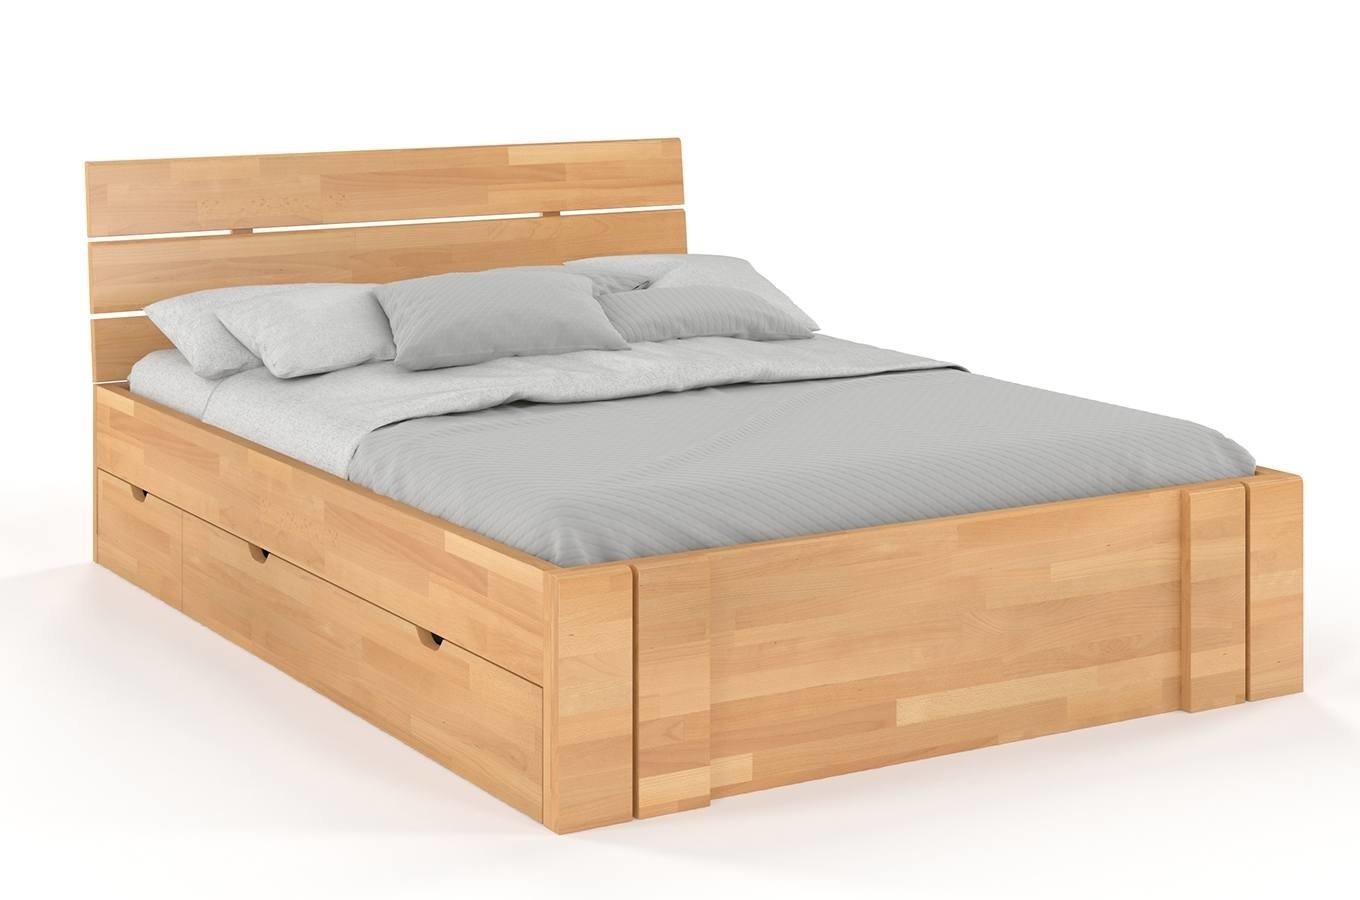 Łóżko drewniane bukowe Visby Arhus High Drawers (z szufladami) / 140x200 cm, kolor naturalny